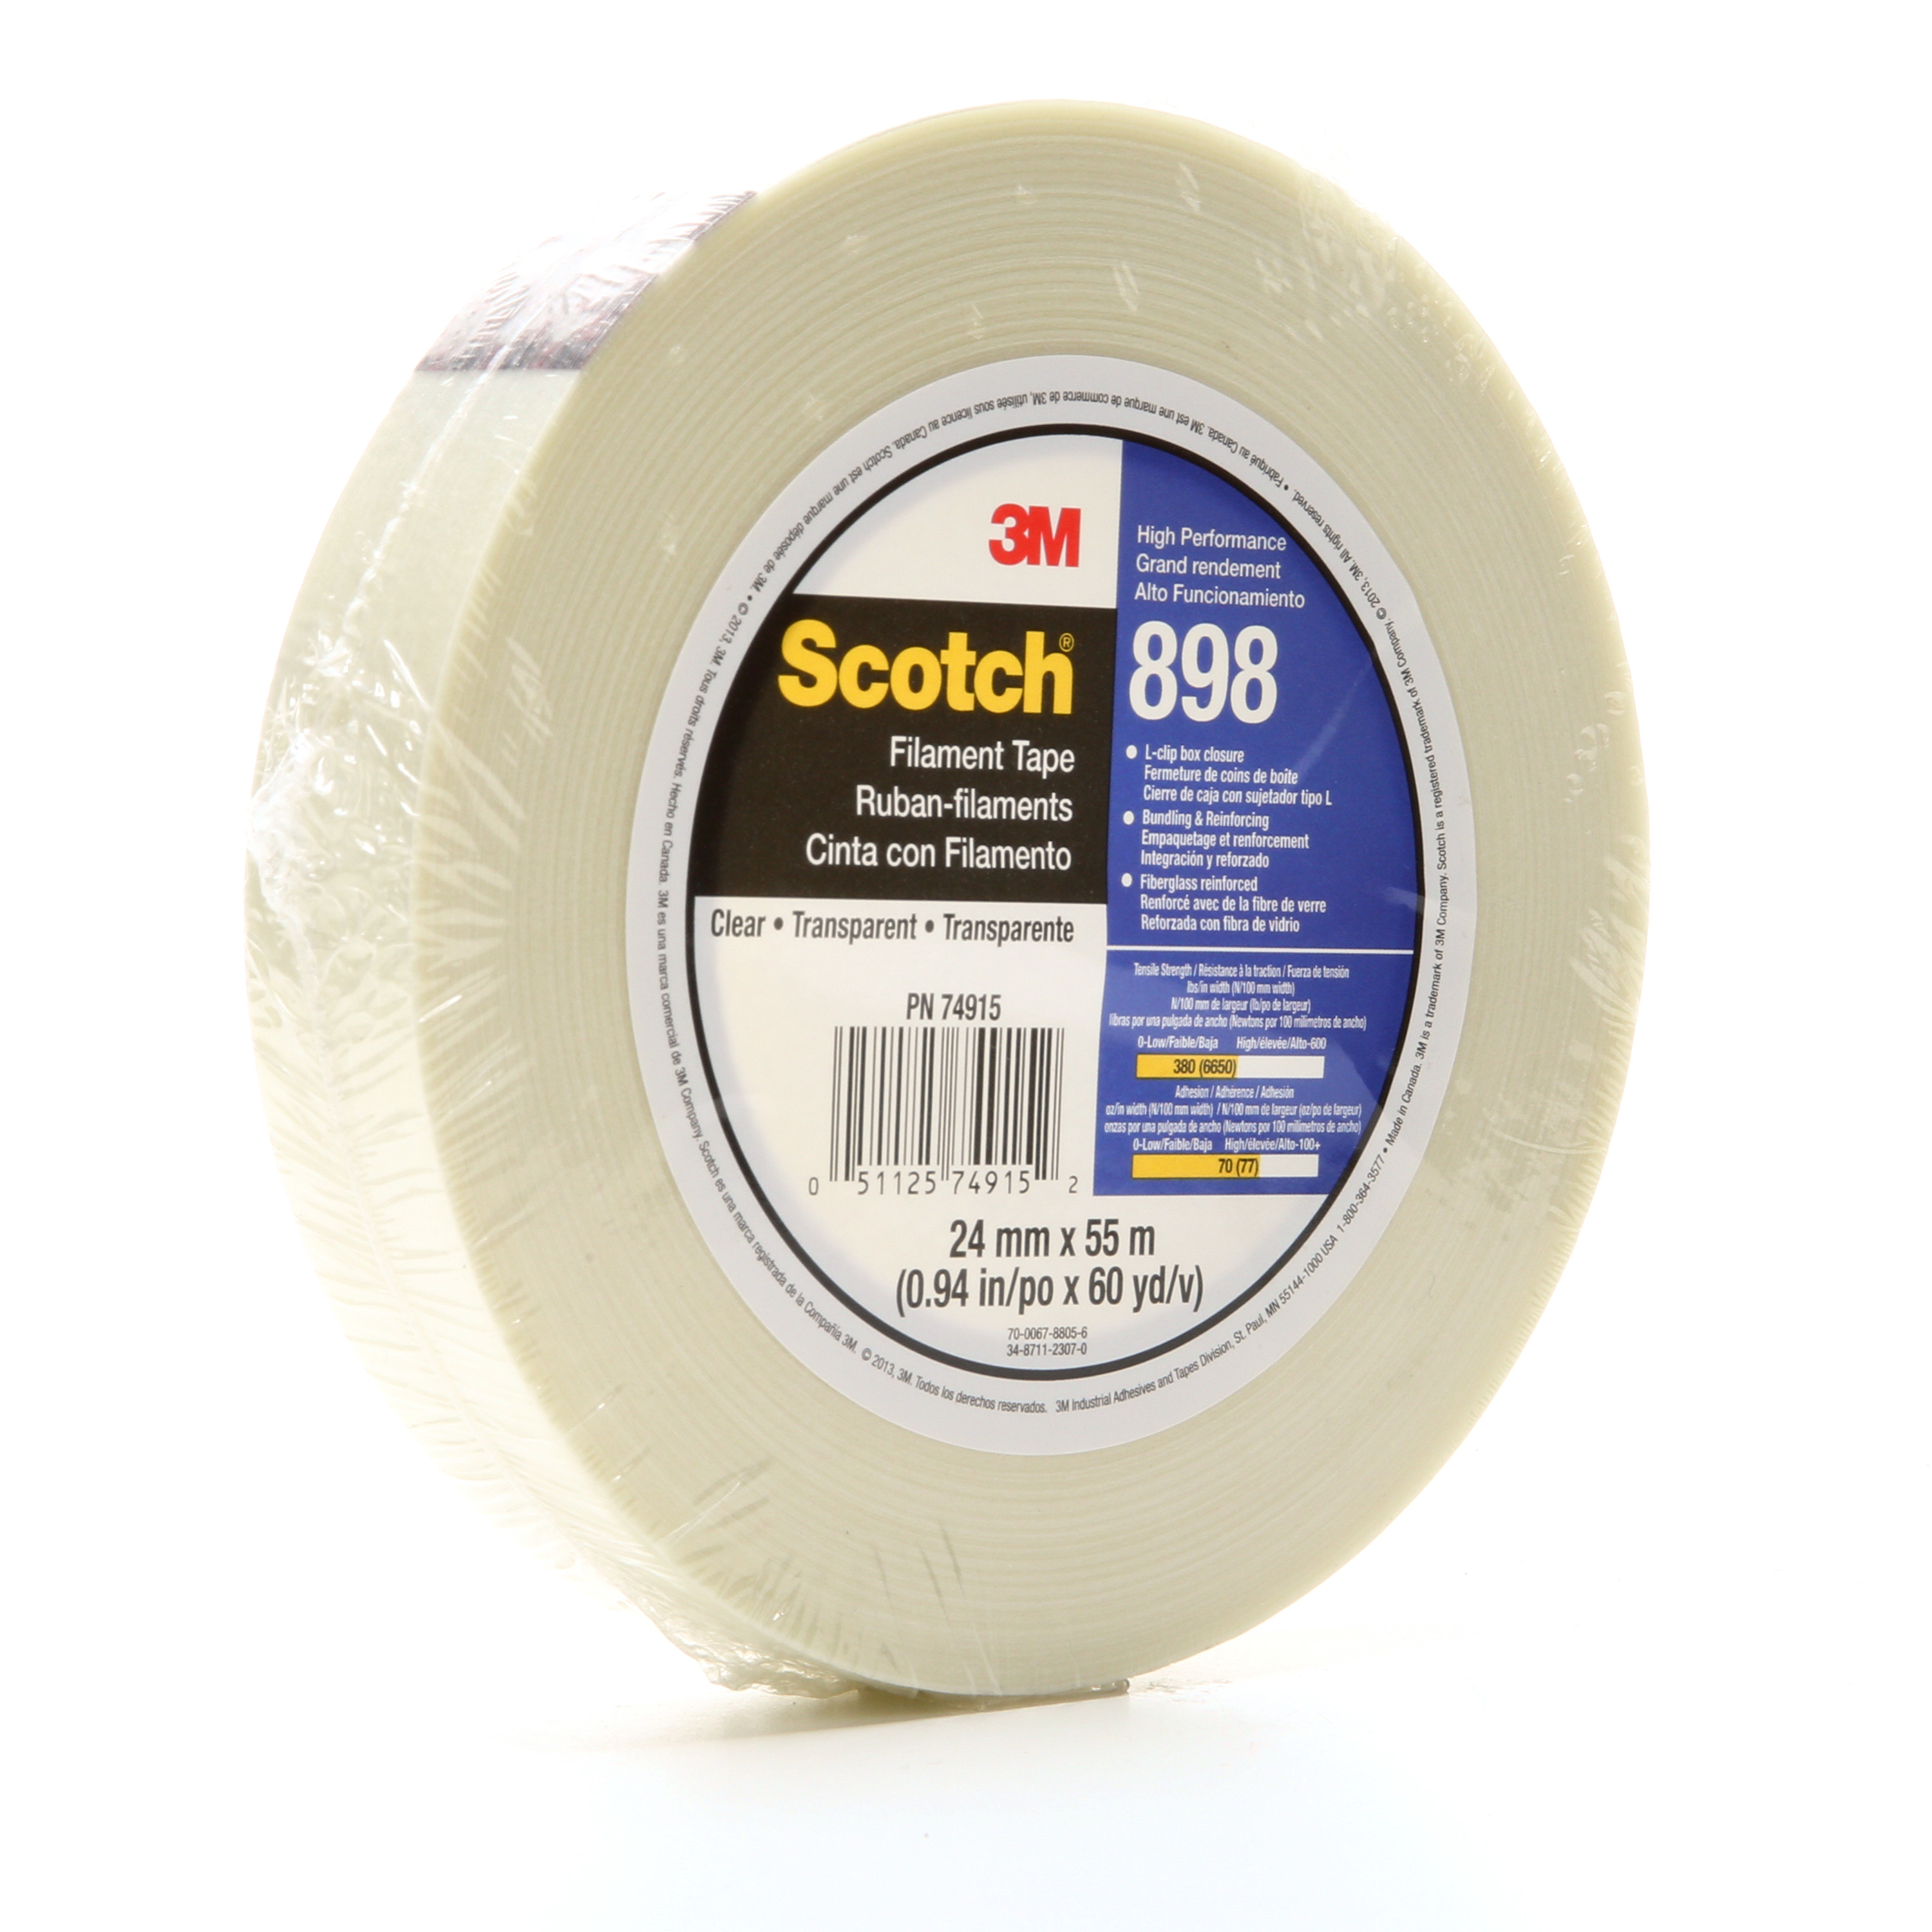 Scotch® Filament Tape 898, Clear, 24 mm x 330 m, 6.6 mil, 6 rolls per
case